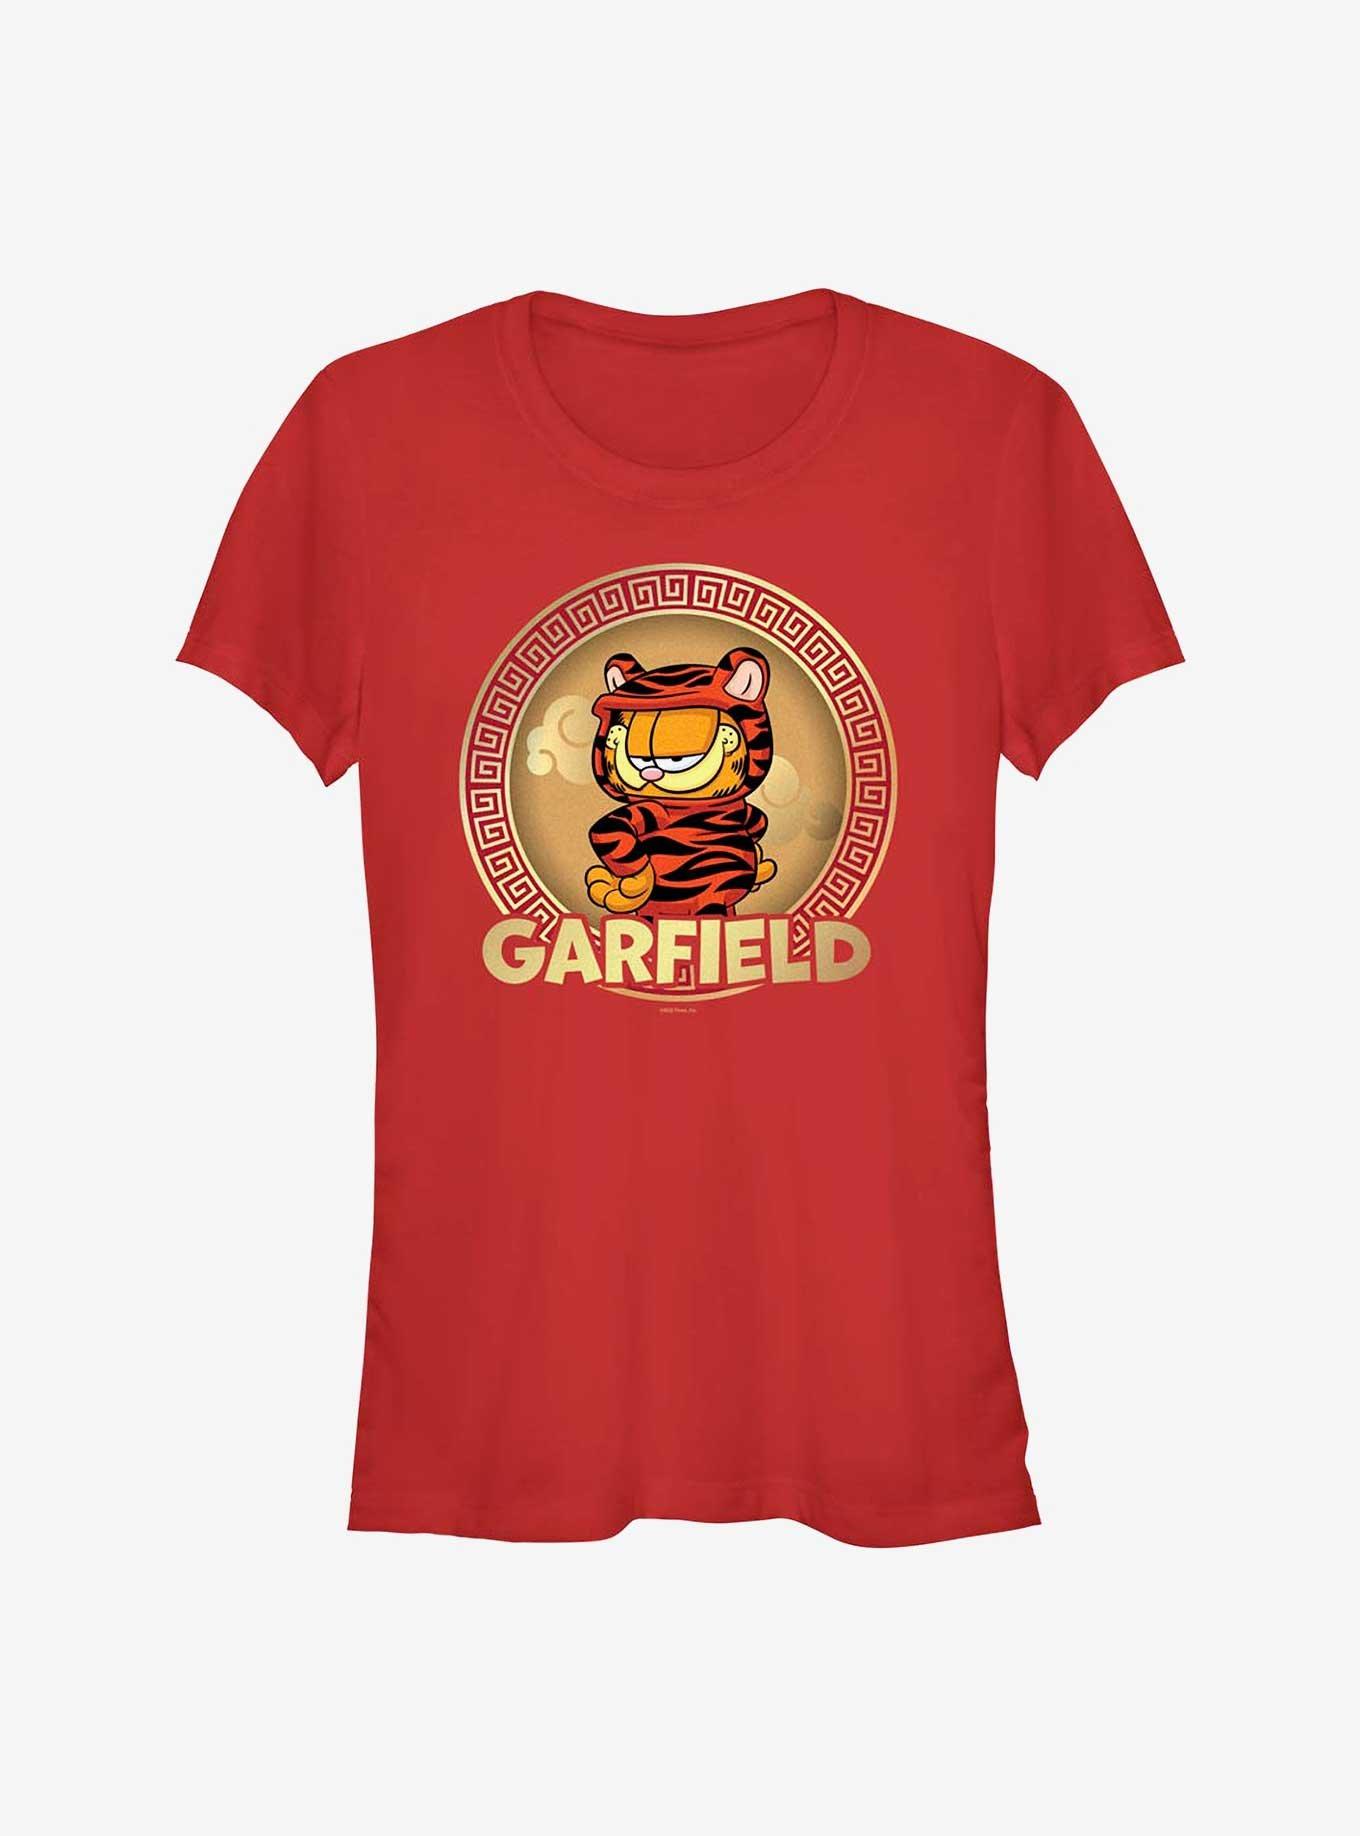 Garfield Confident Tiger Girls T-Shirt